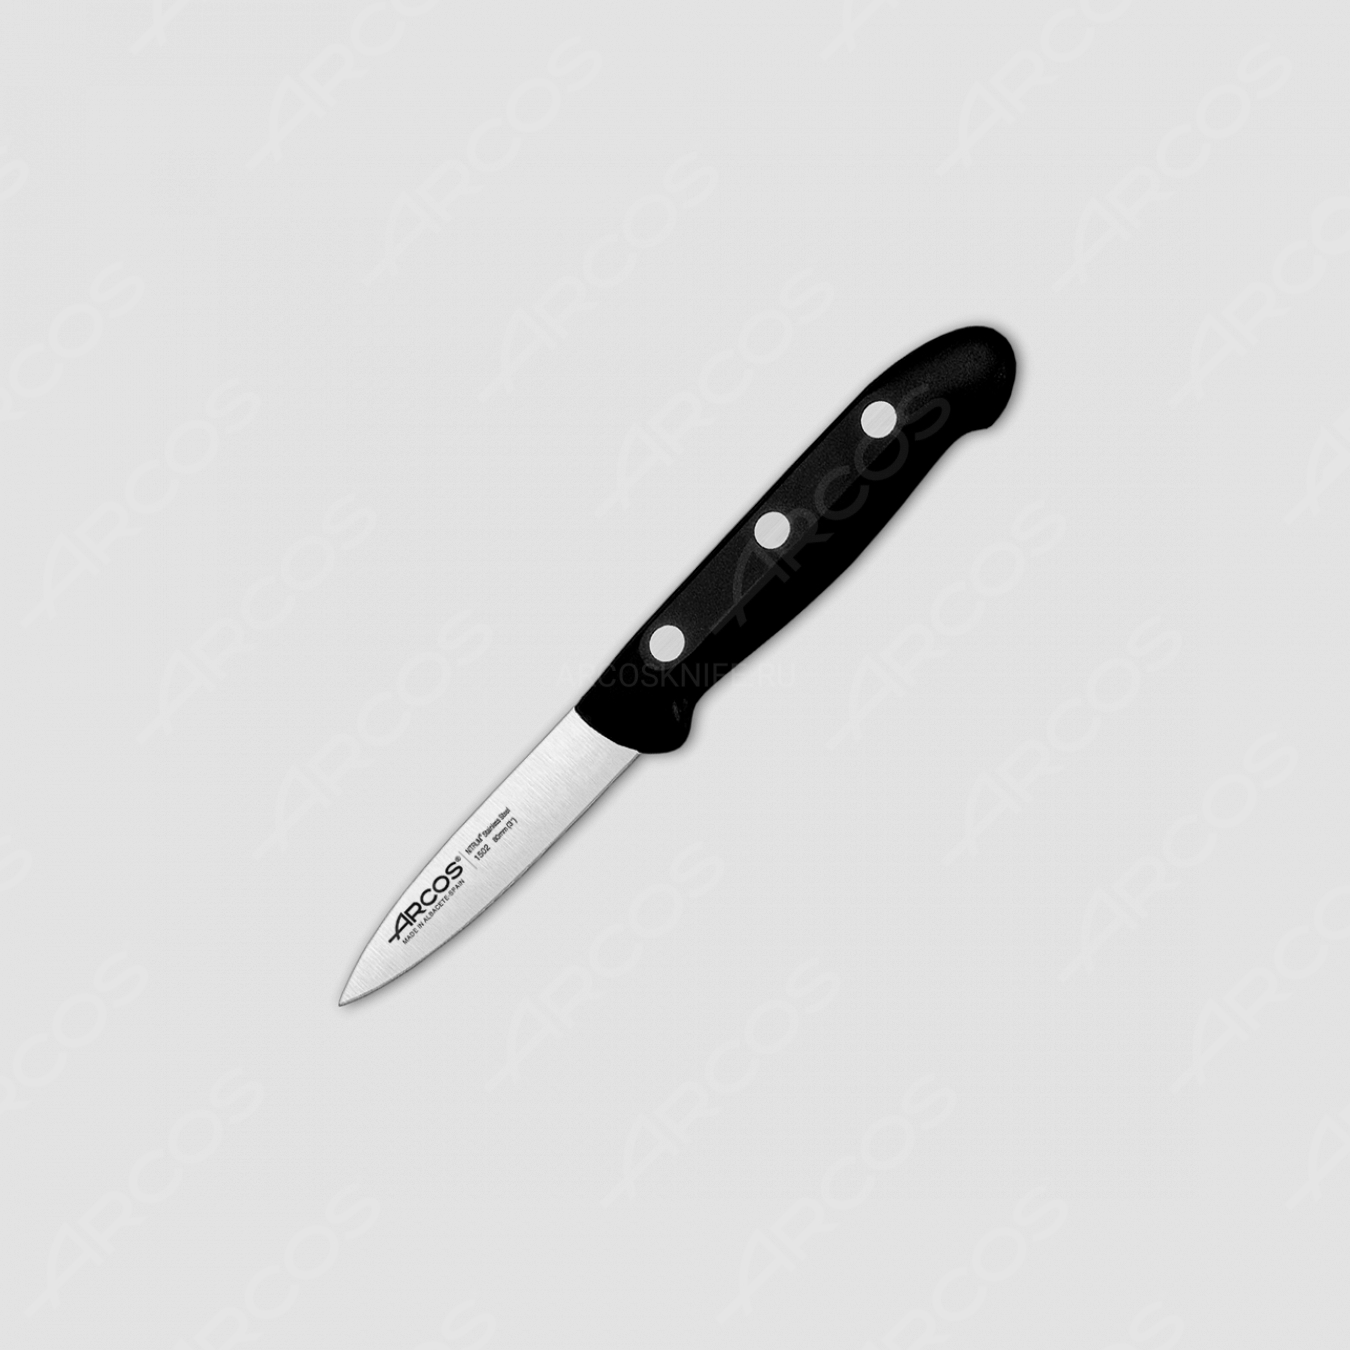 Нож кухонный для чистки 8 см, серия MAITRE, ARCOS, Испания